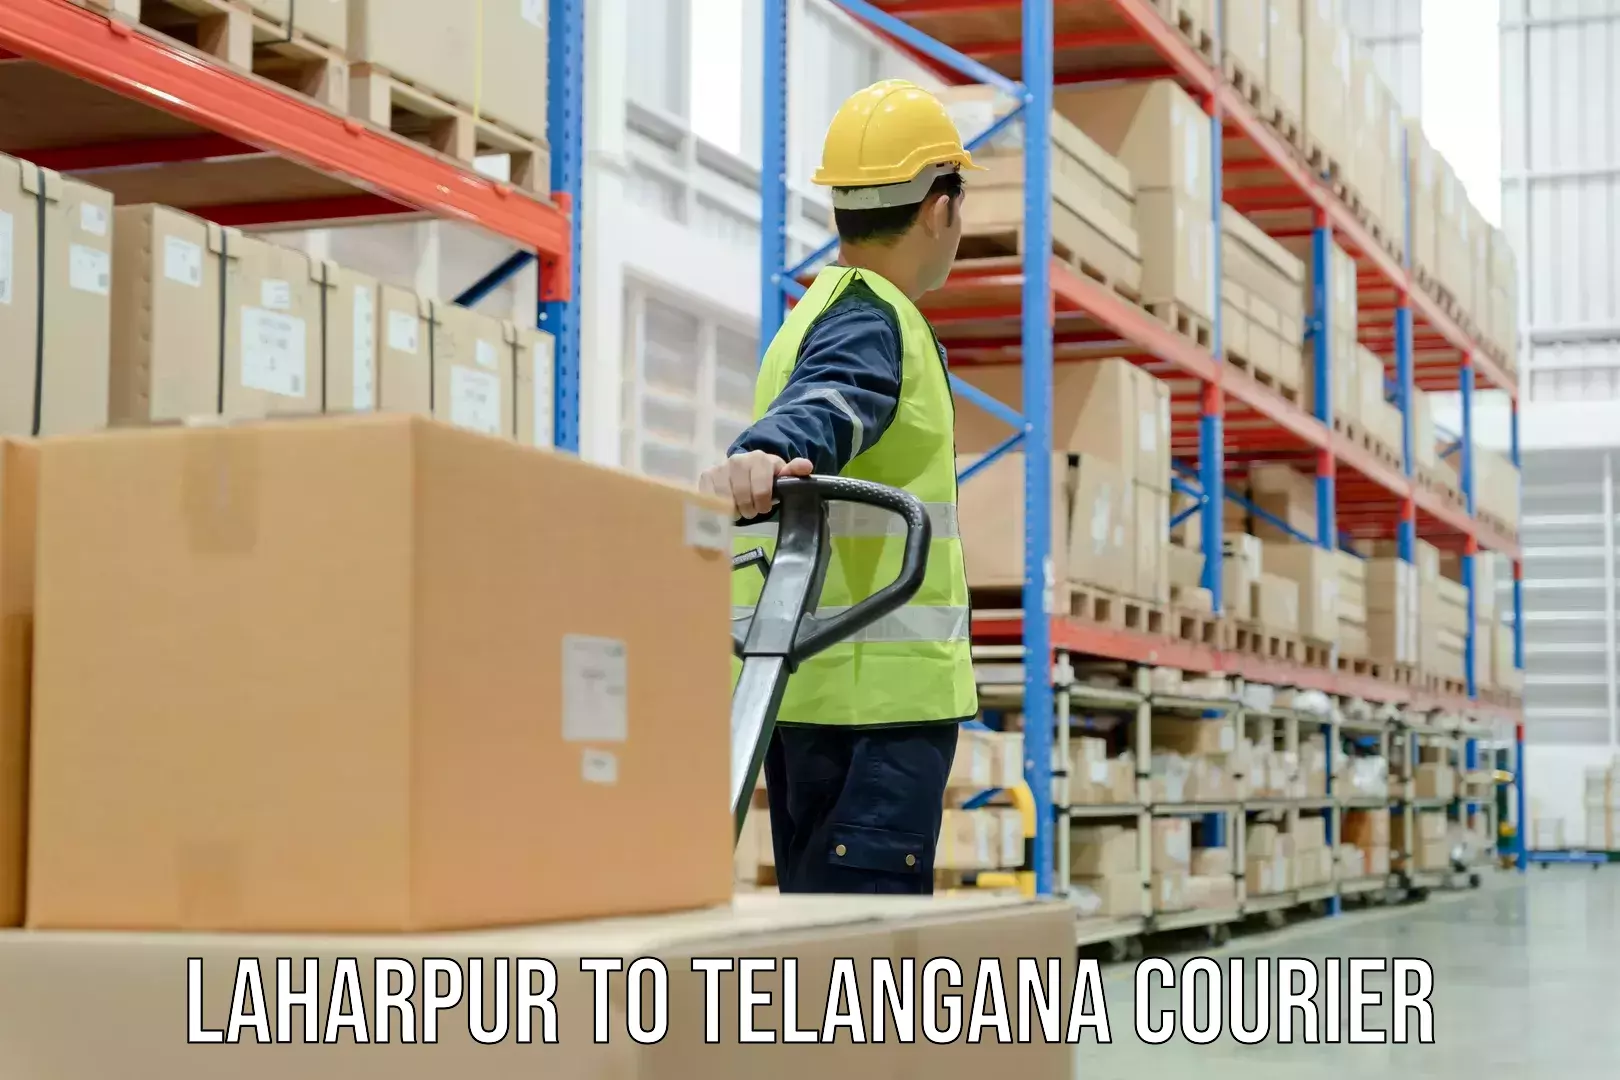 Courier service comparison Laharpur to Medchal